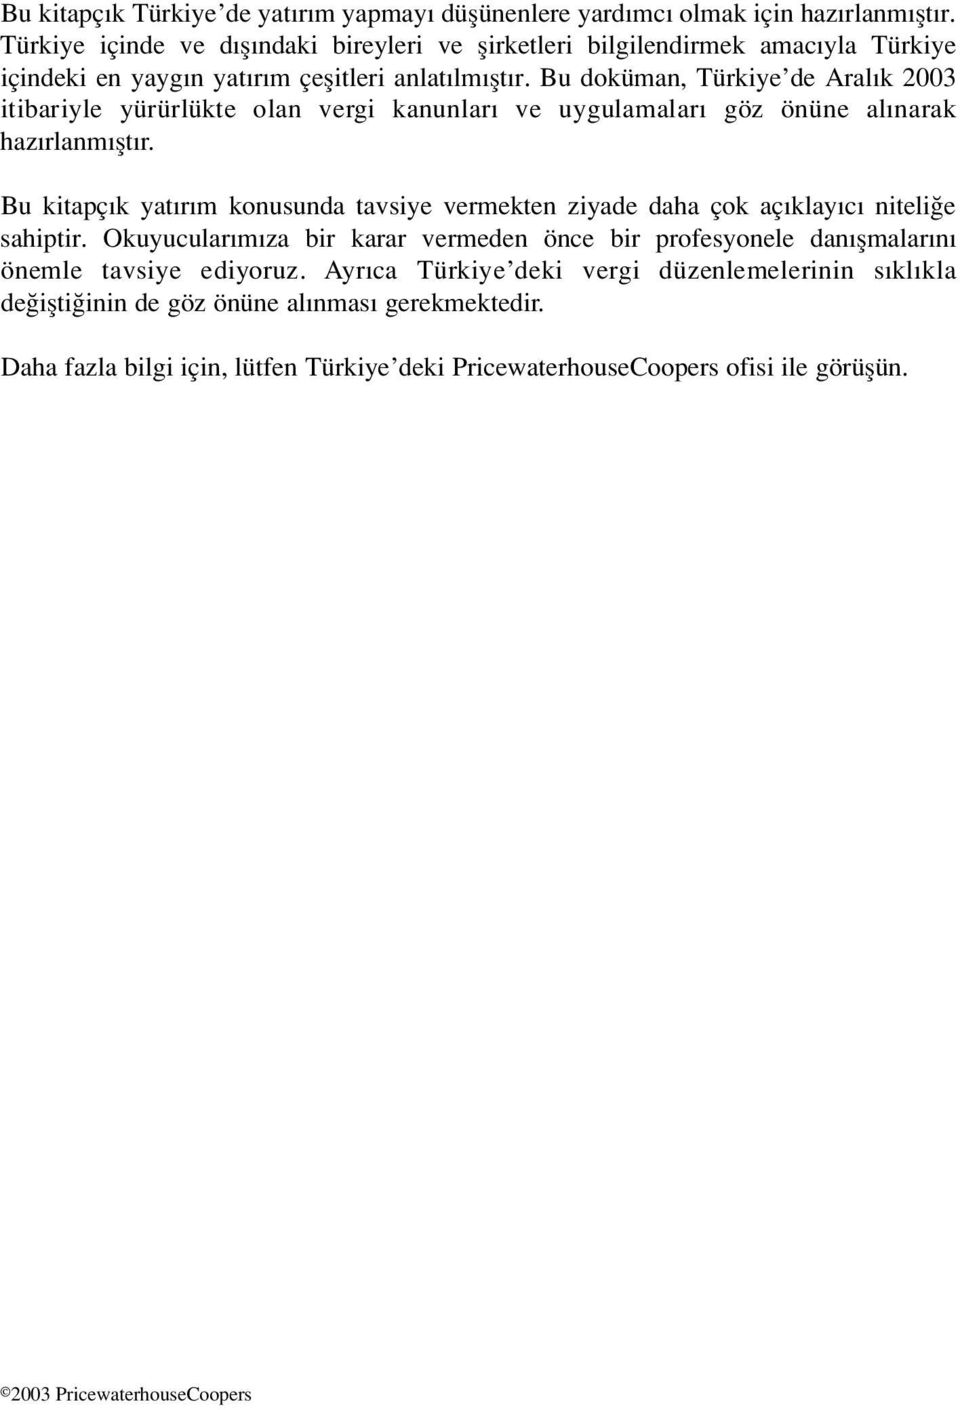 Bu doküman, Türkiye de Aral k 2003 itibariyle yürürlükte olan vergi kanunlar ve uygulamalar göz önüne al narak haz rlanm flt r.